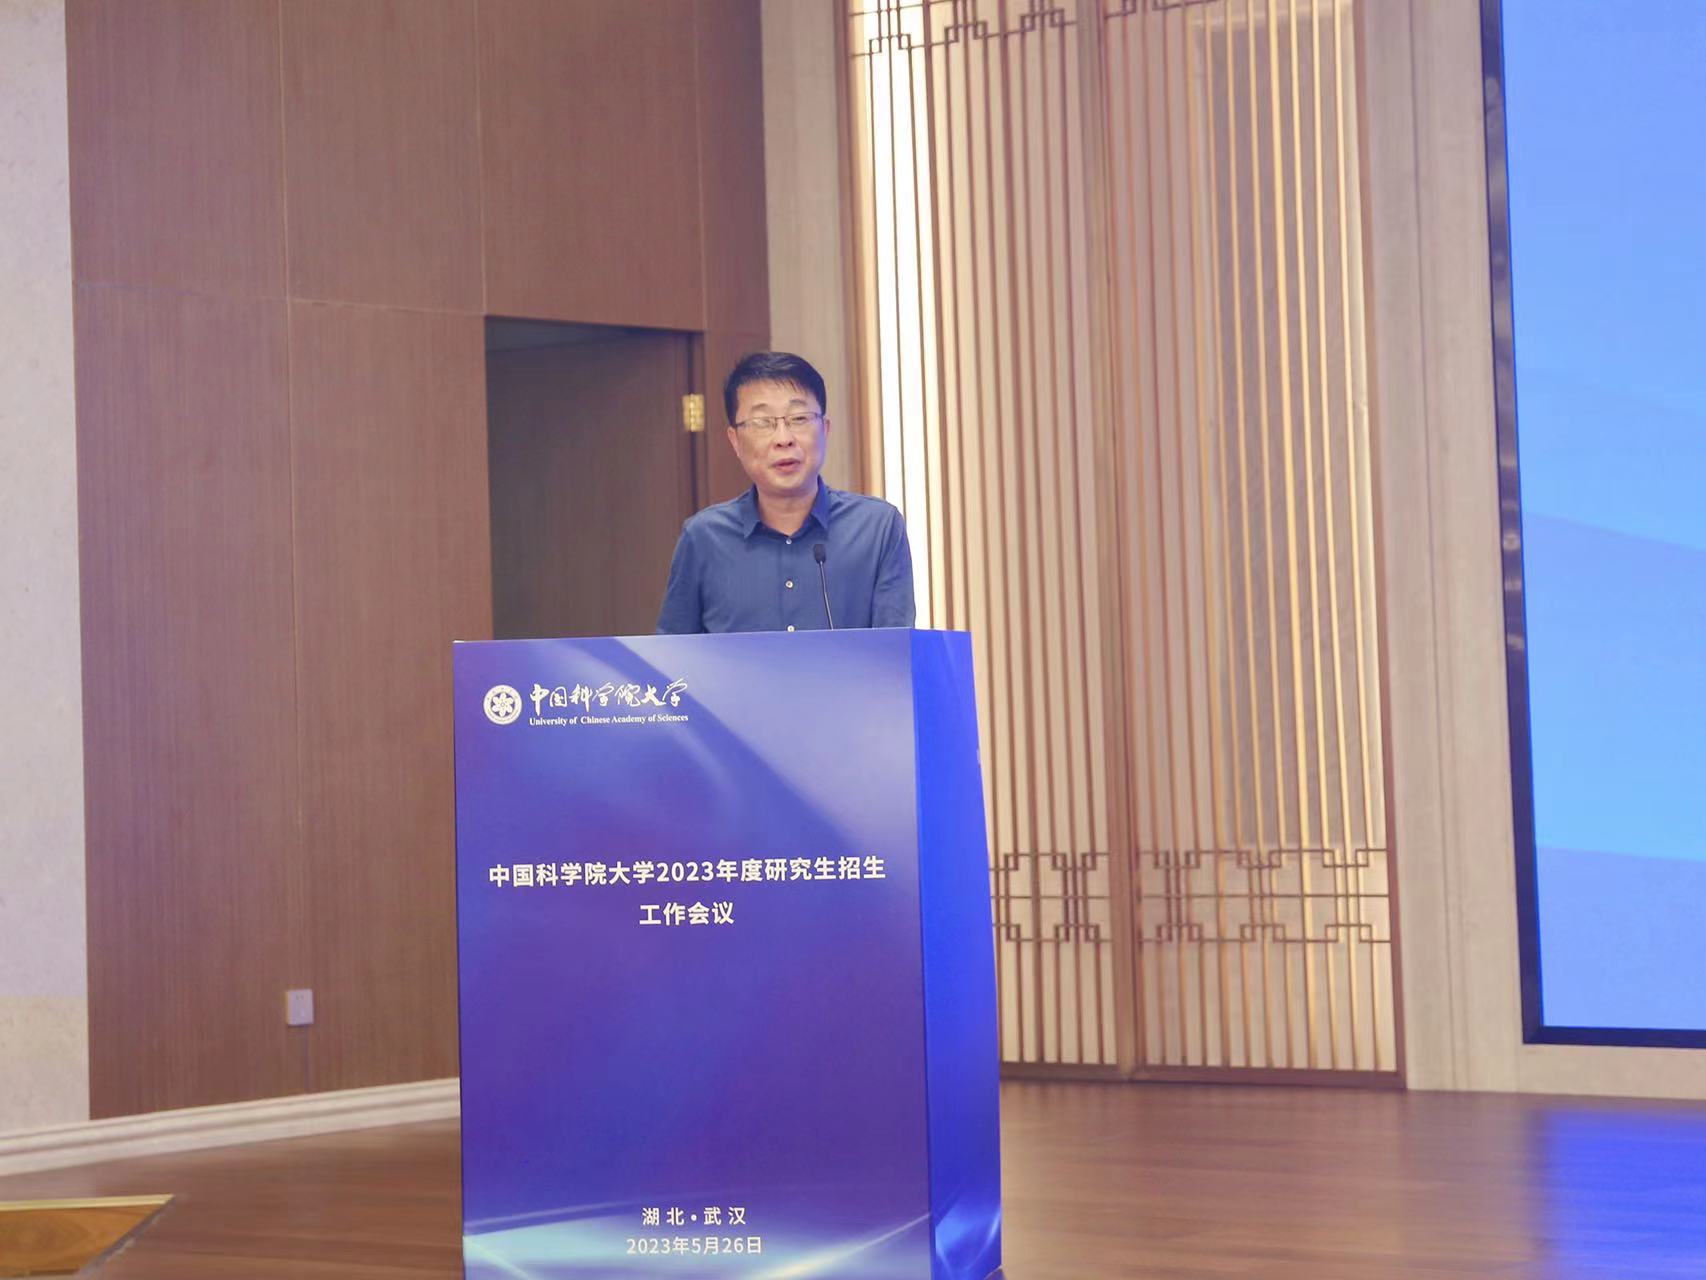 中国科学院大学2023年度研究生招生工作会议在武汉召开